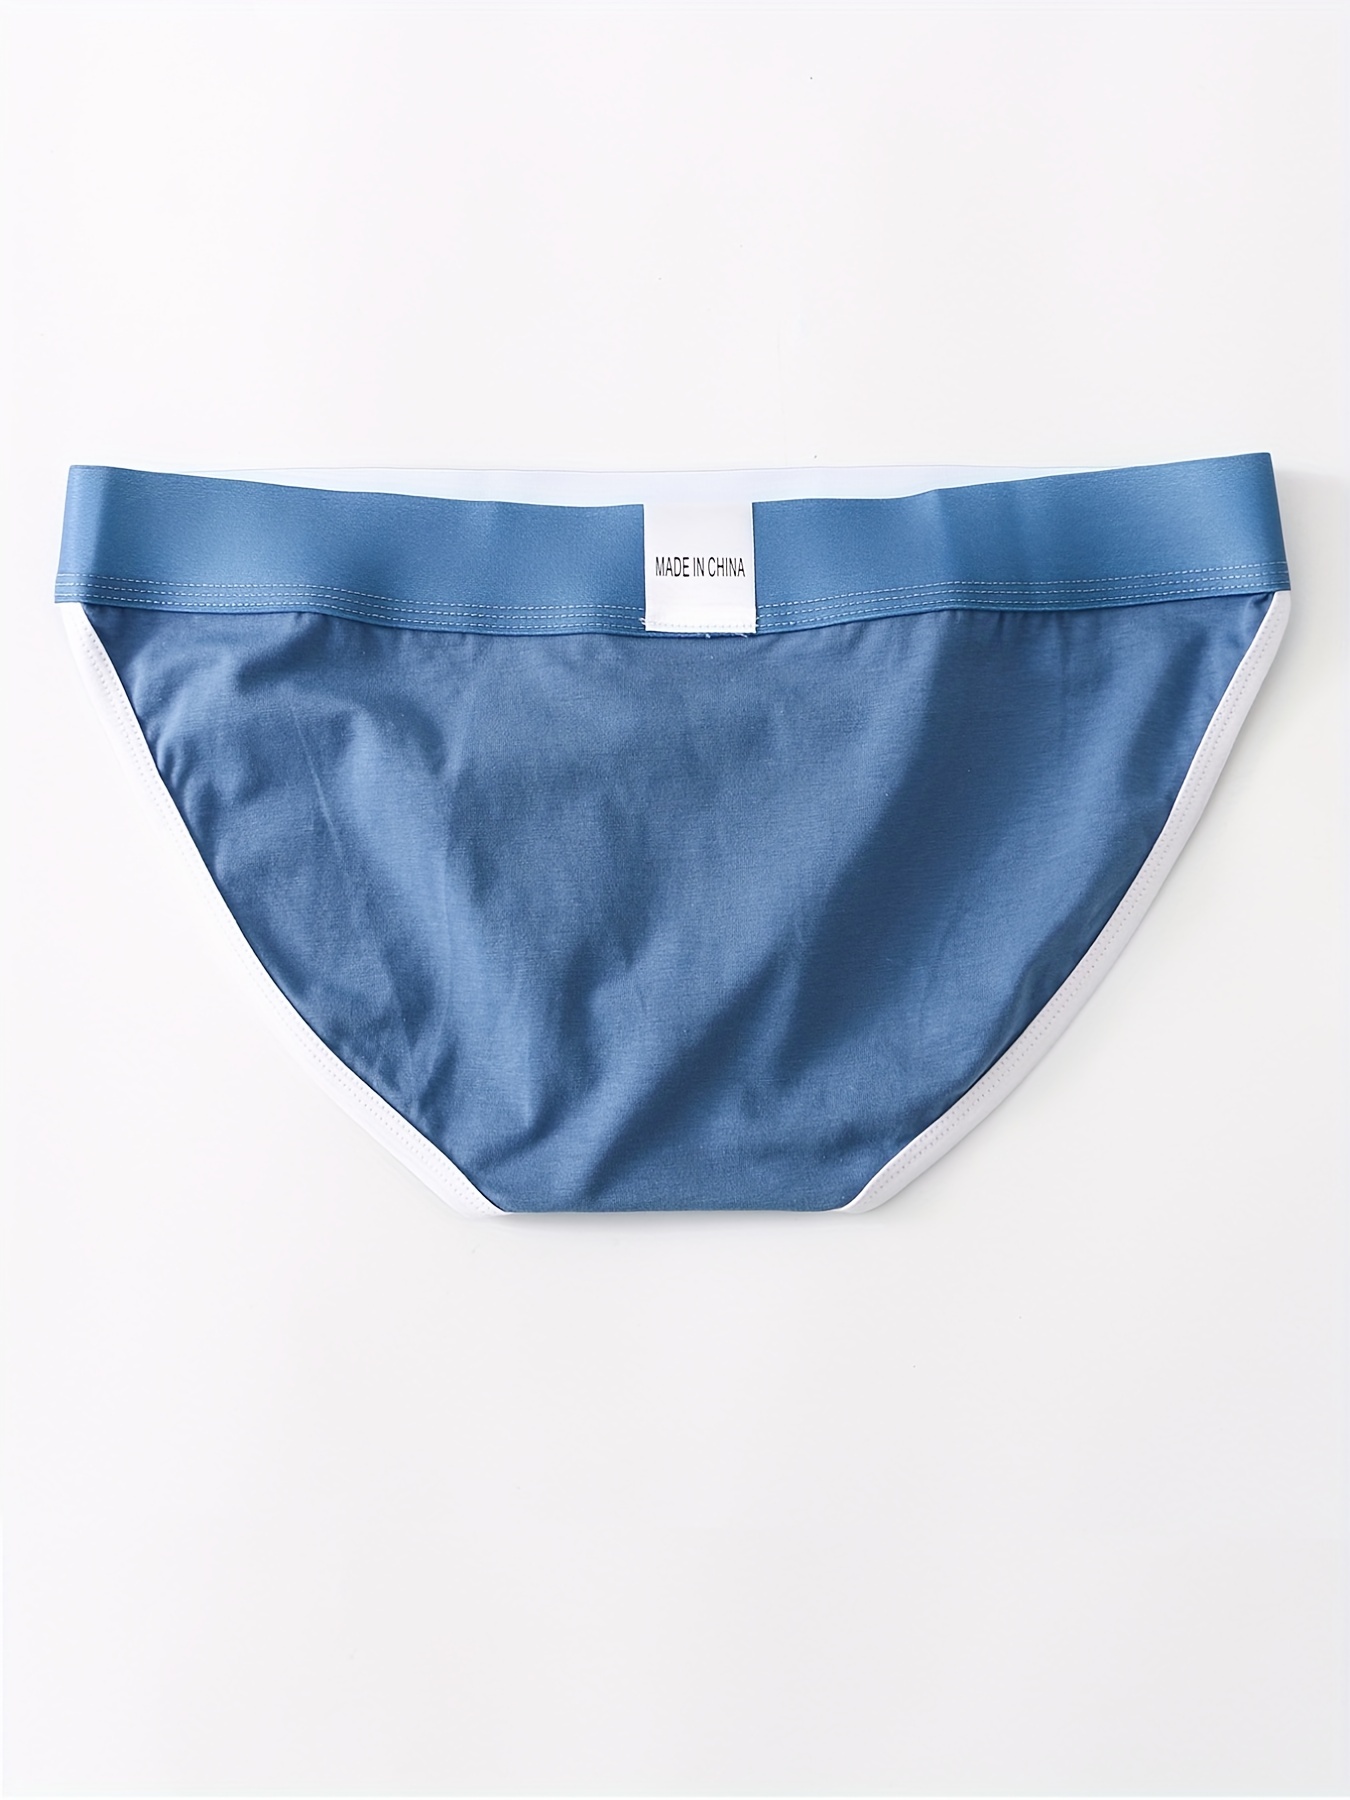 Cotton Blue Lux Cozi Men Underwear, Handwash, Size: 85cm at Rs 89